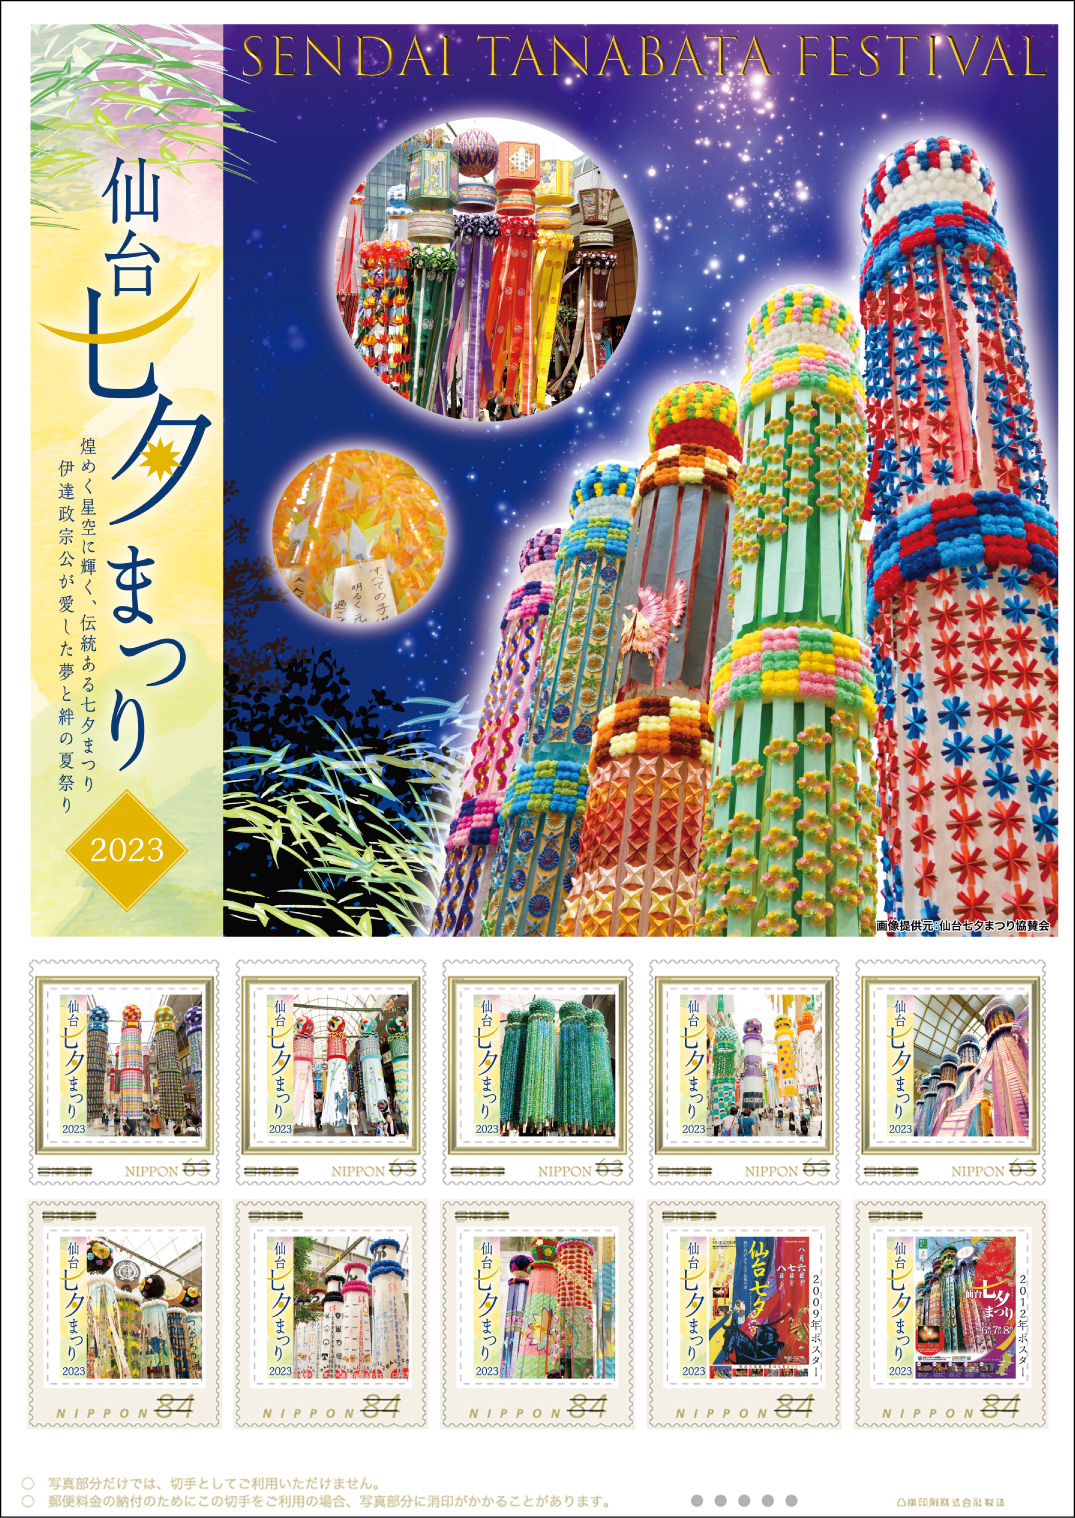 オリジナル フレーム切手「仙台七夕まつり2023」の販売開始および贈呈式の開催